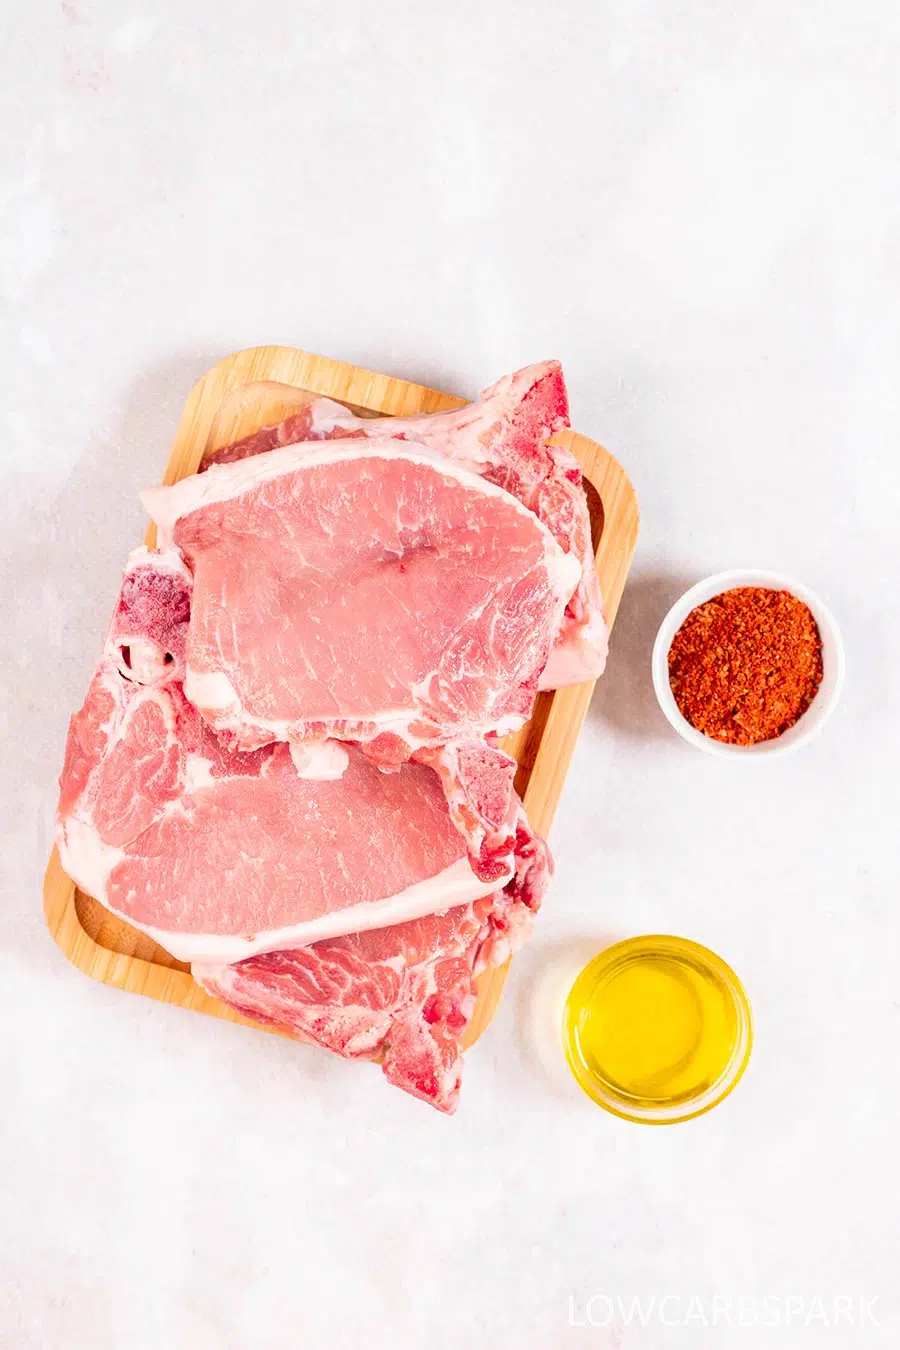 pan seared pork chops ingredients